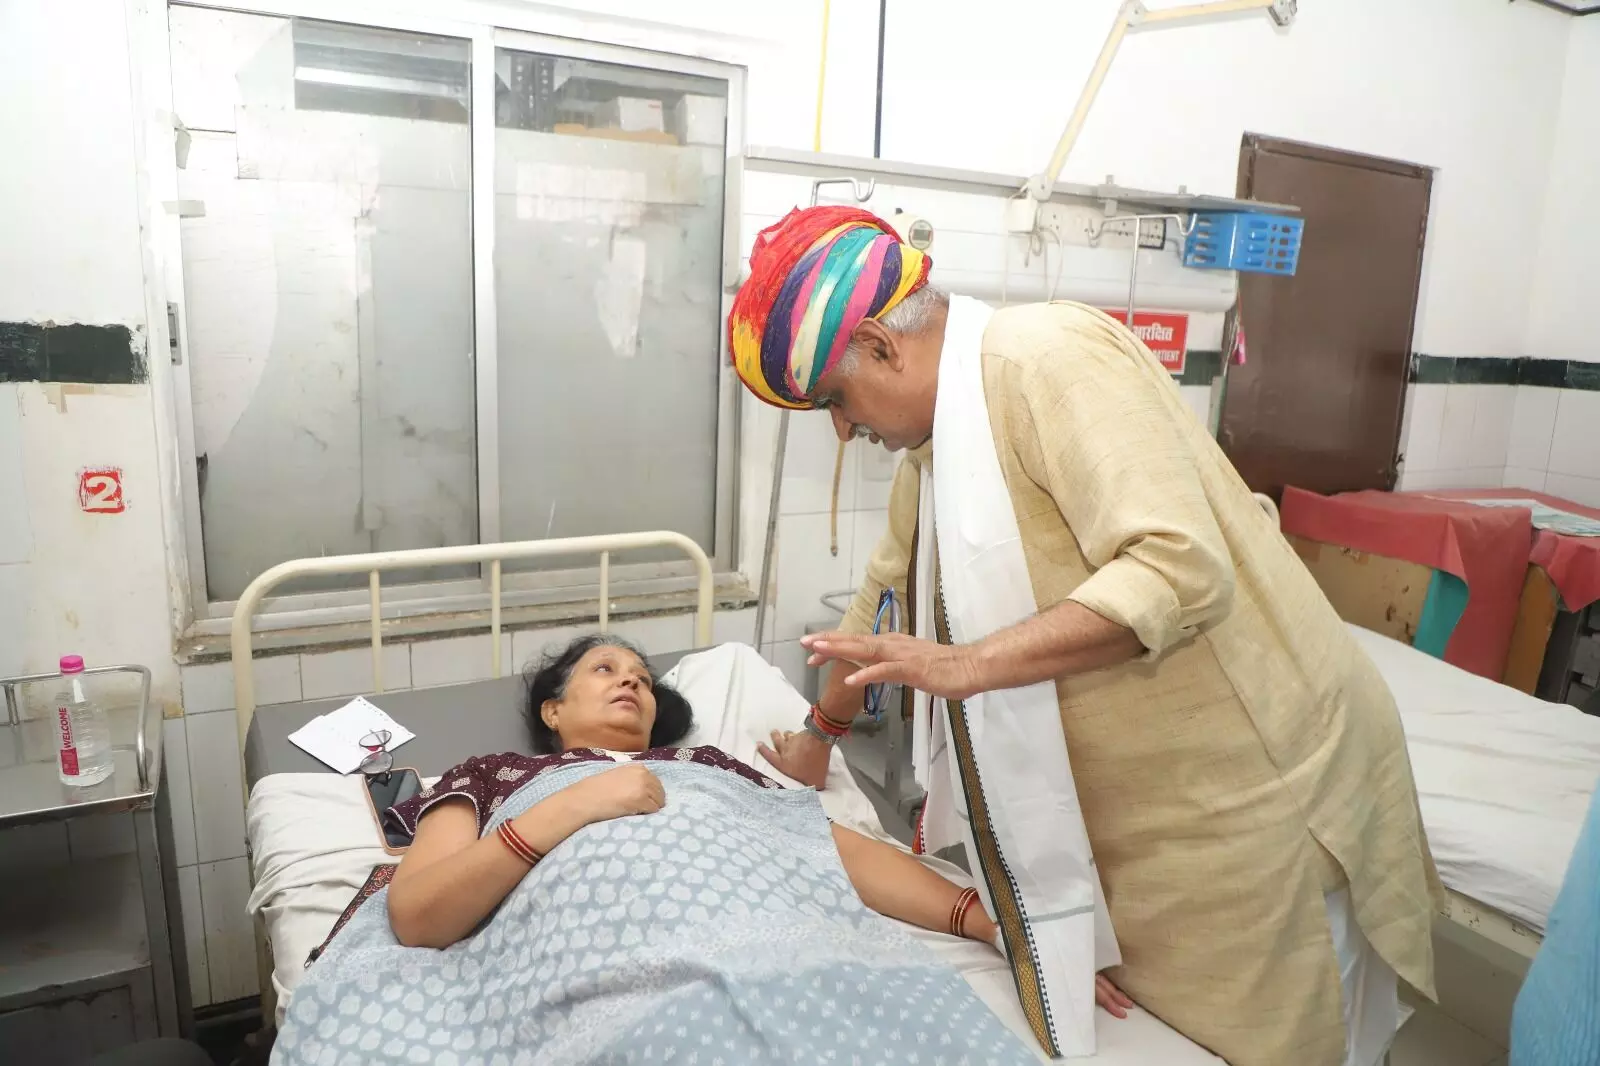 Pali : अस्पताल में सफाई व्यवस्था सुधारने के दिए निर्देश स्वतन्त्र शासन मंत्री जाबर सिंह खर्रा ने पाली जिले के